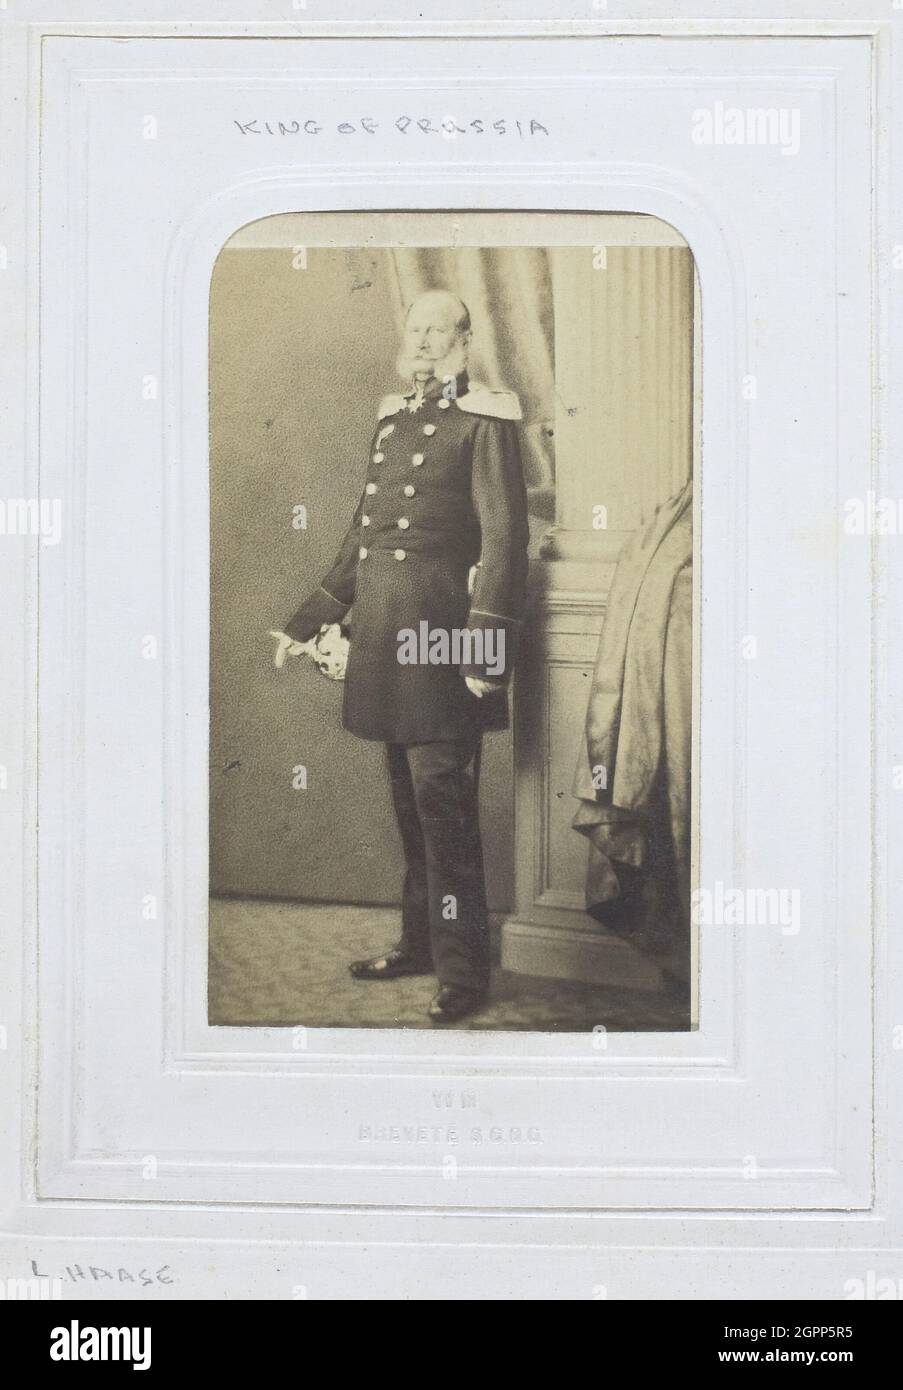 S.R.H. der Prinz von Preußen, Prinzregent, 1860-69. [Porträt von Wilhelm I., dem zukünftigen Kaiser von Deutschland und König von Preußen]. Albumin-Druck. Stockfoto